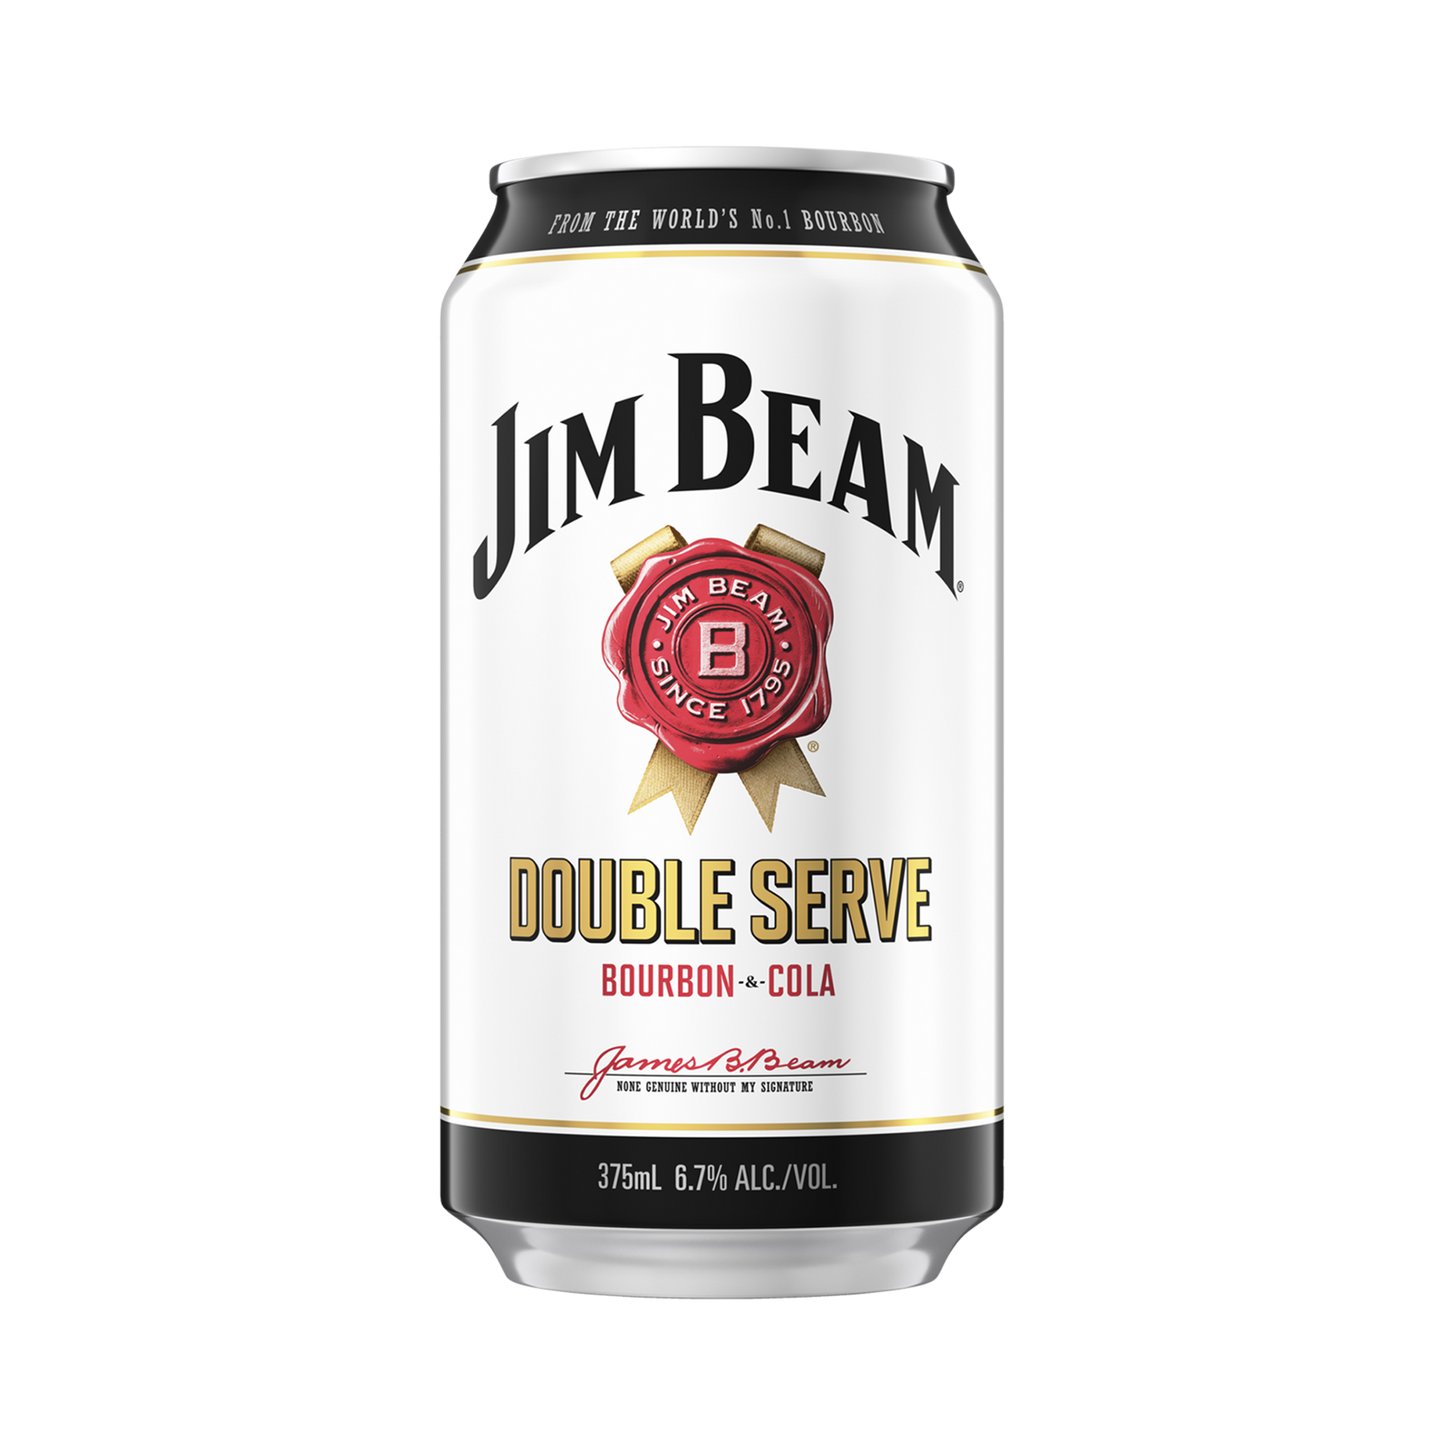 Jim Beam Bourbon & Cola Double Serve Cans 375ml